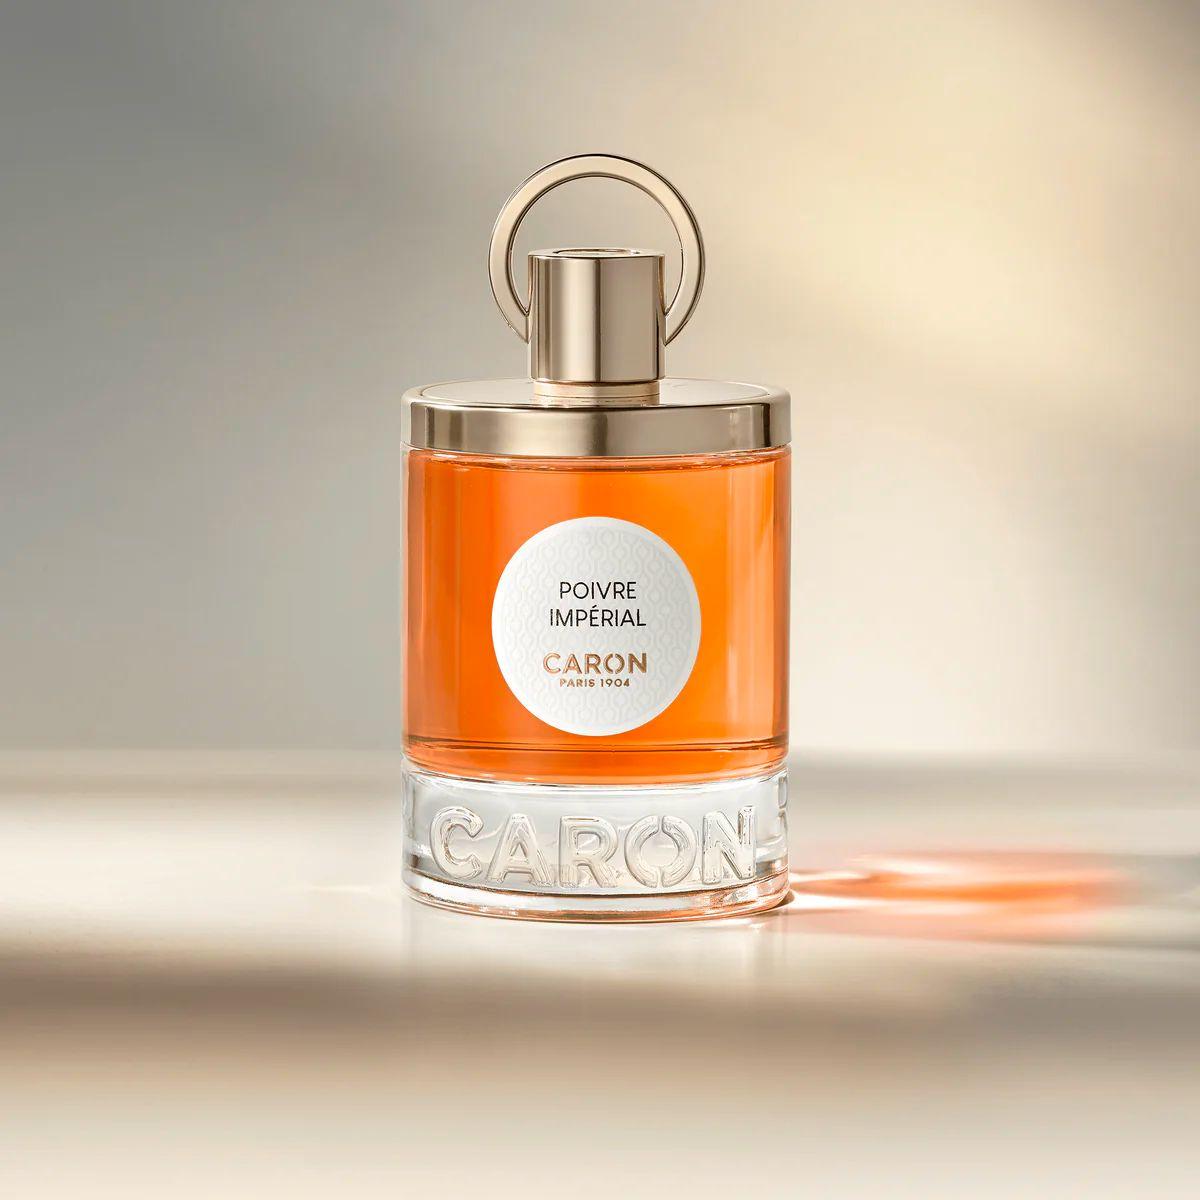 Caron - Poivre Imperial 100 ml | Perfume Lounge